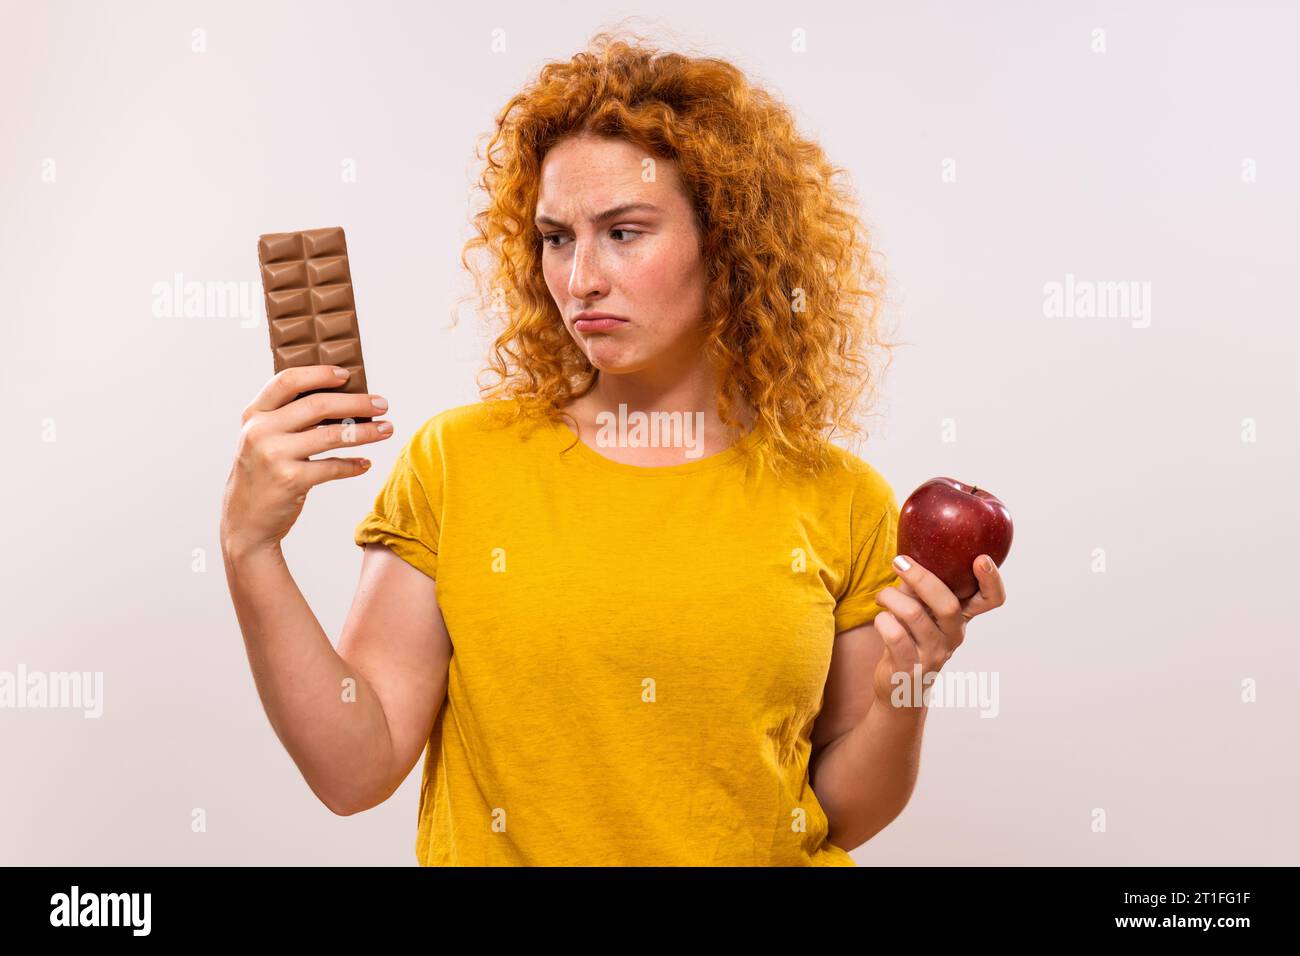 Femme de gingembre est triste parce qu'elle doit manger des fruits, elle préfère manger du chocolat. Banque D'Images